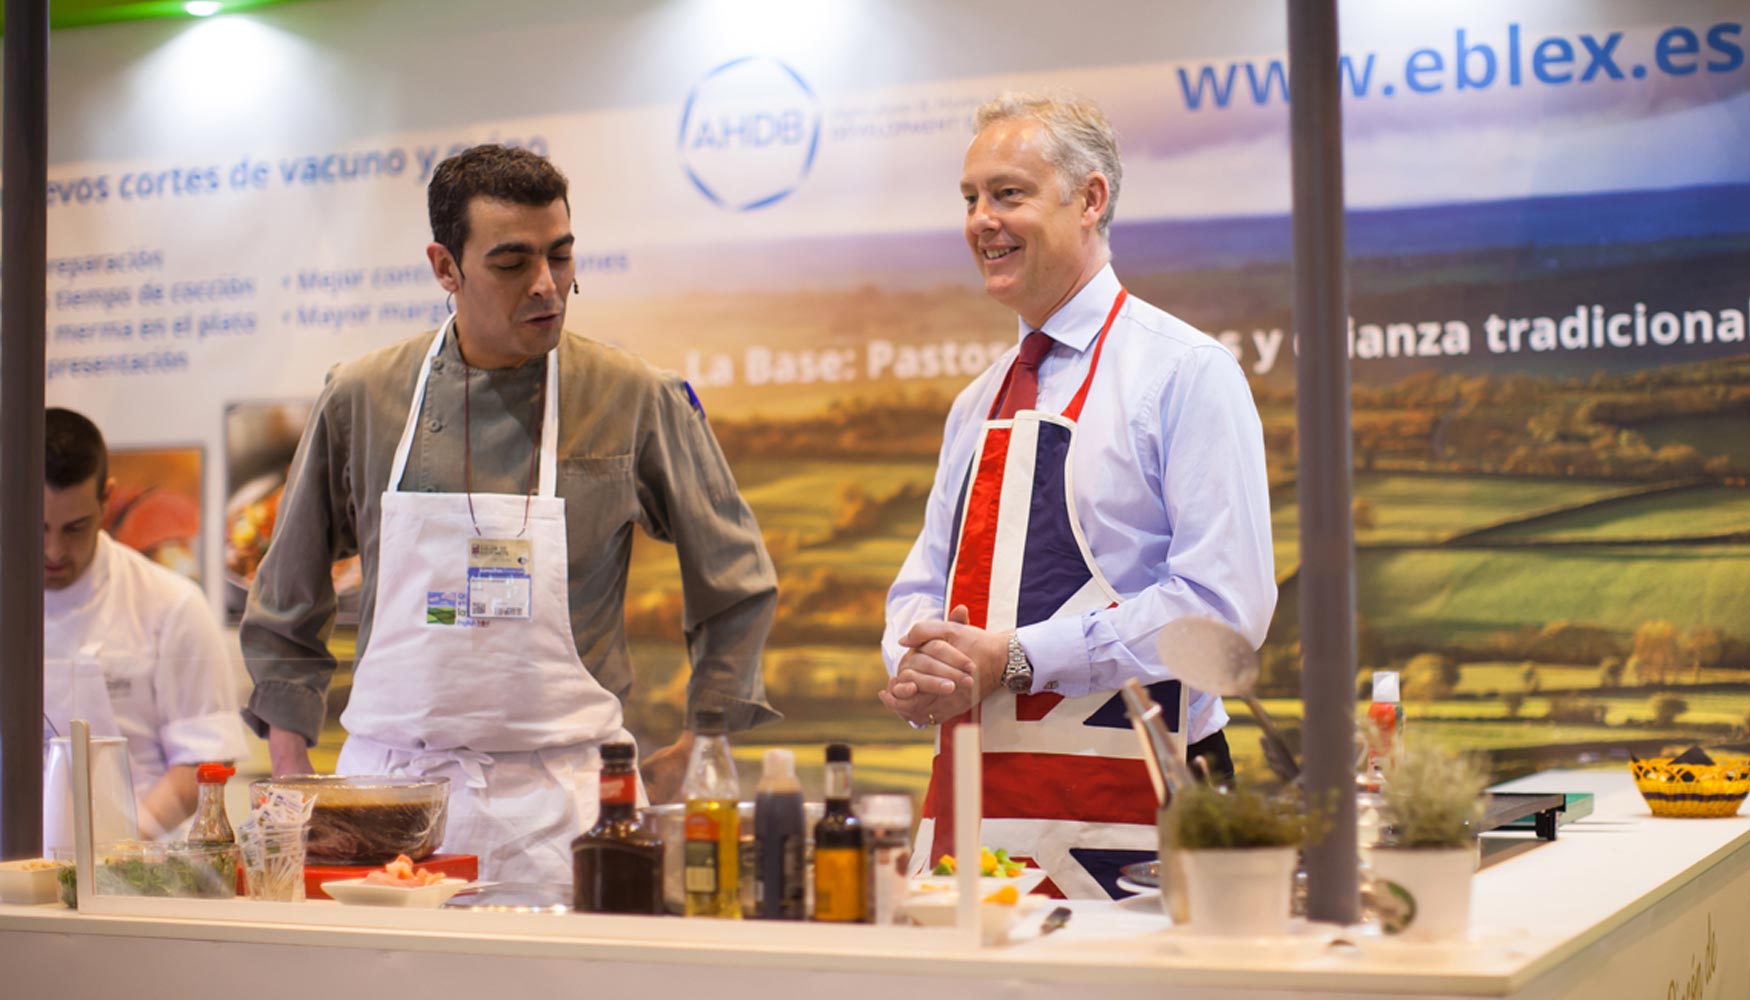 El embajador britnico en Espaa, Simon Manley, cocinando en el stand